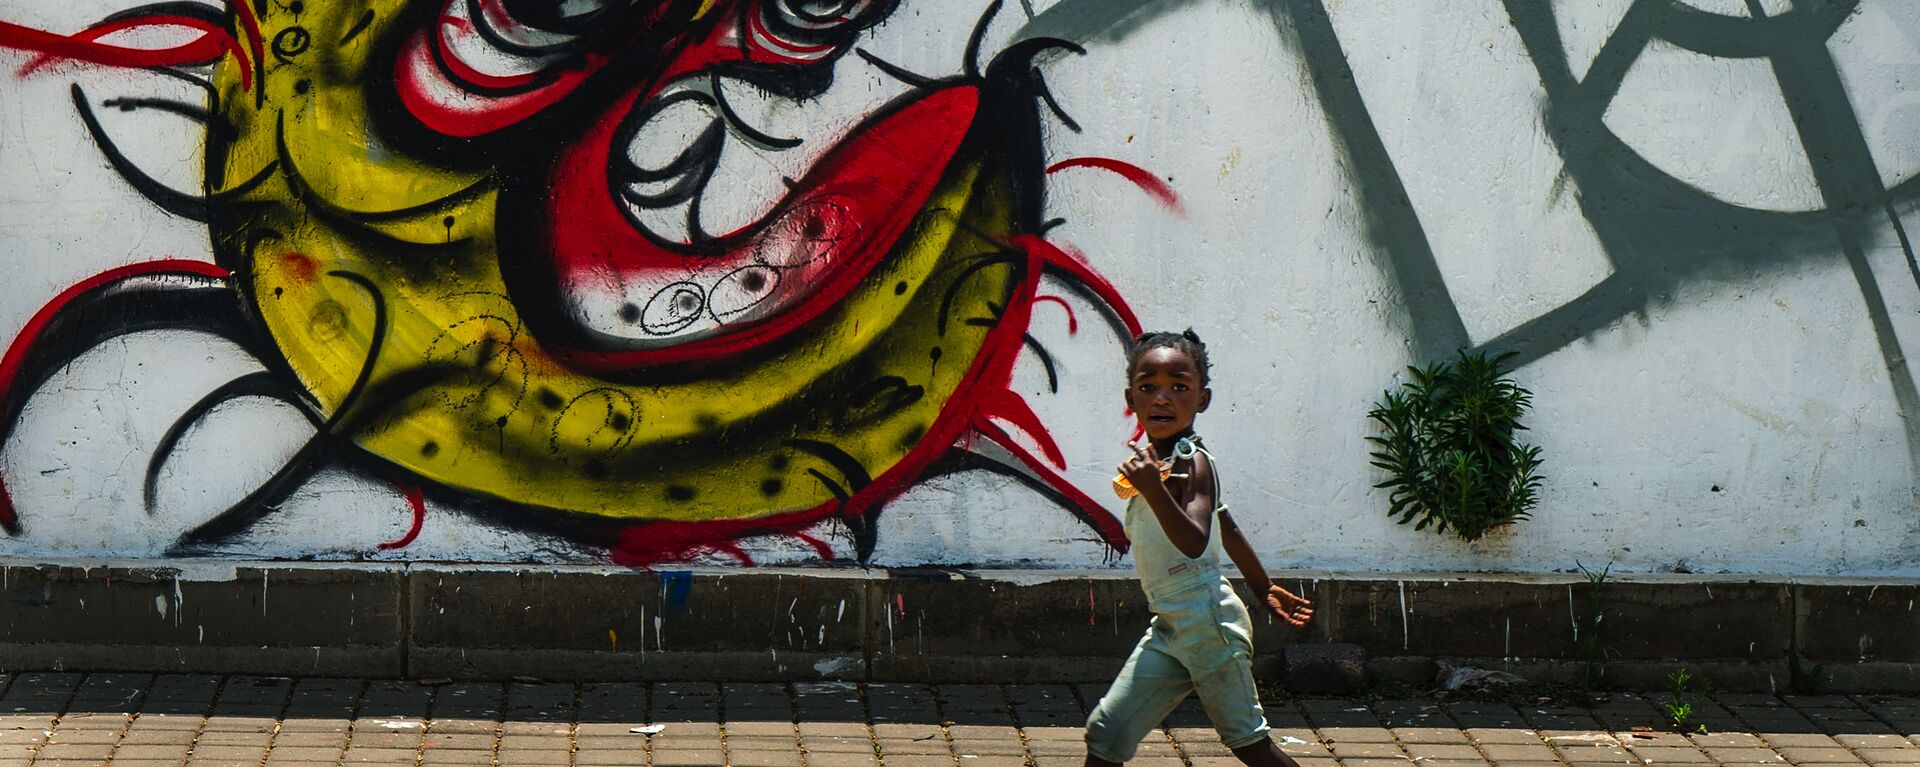 Ребенок у граффити с изображением COVID-19 в Совето, ЮАР - Sputnik Армения, 1920, 02.07.2021